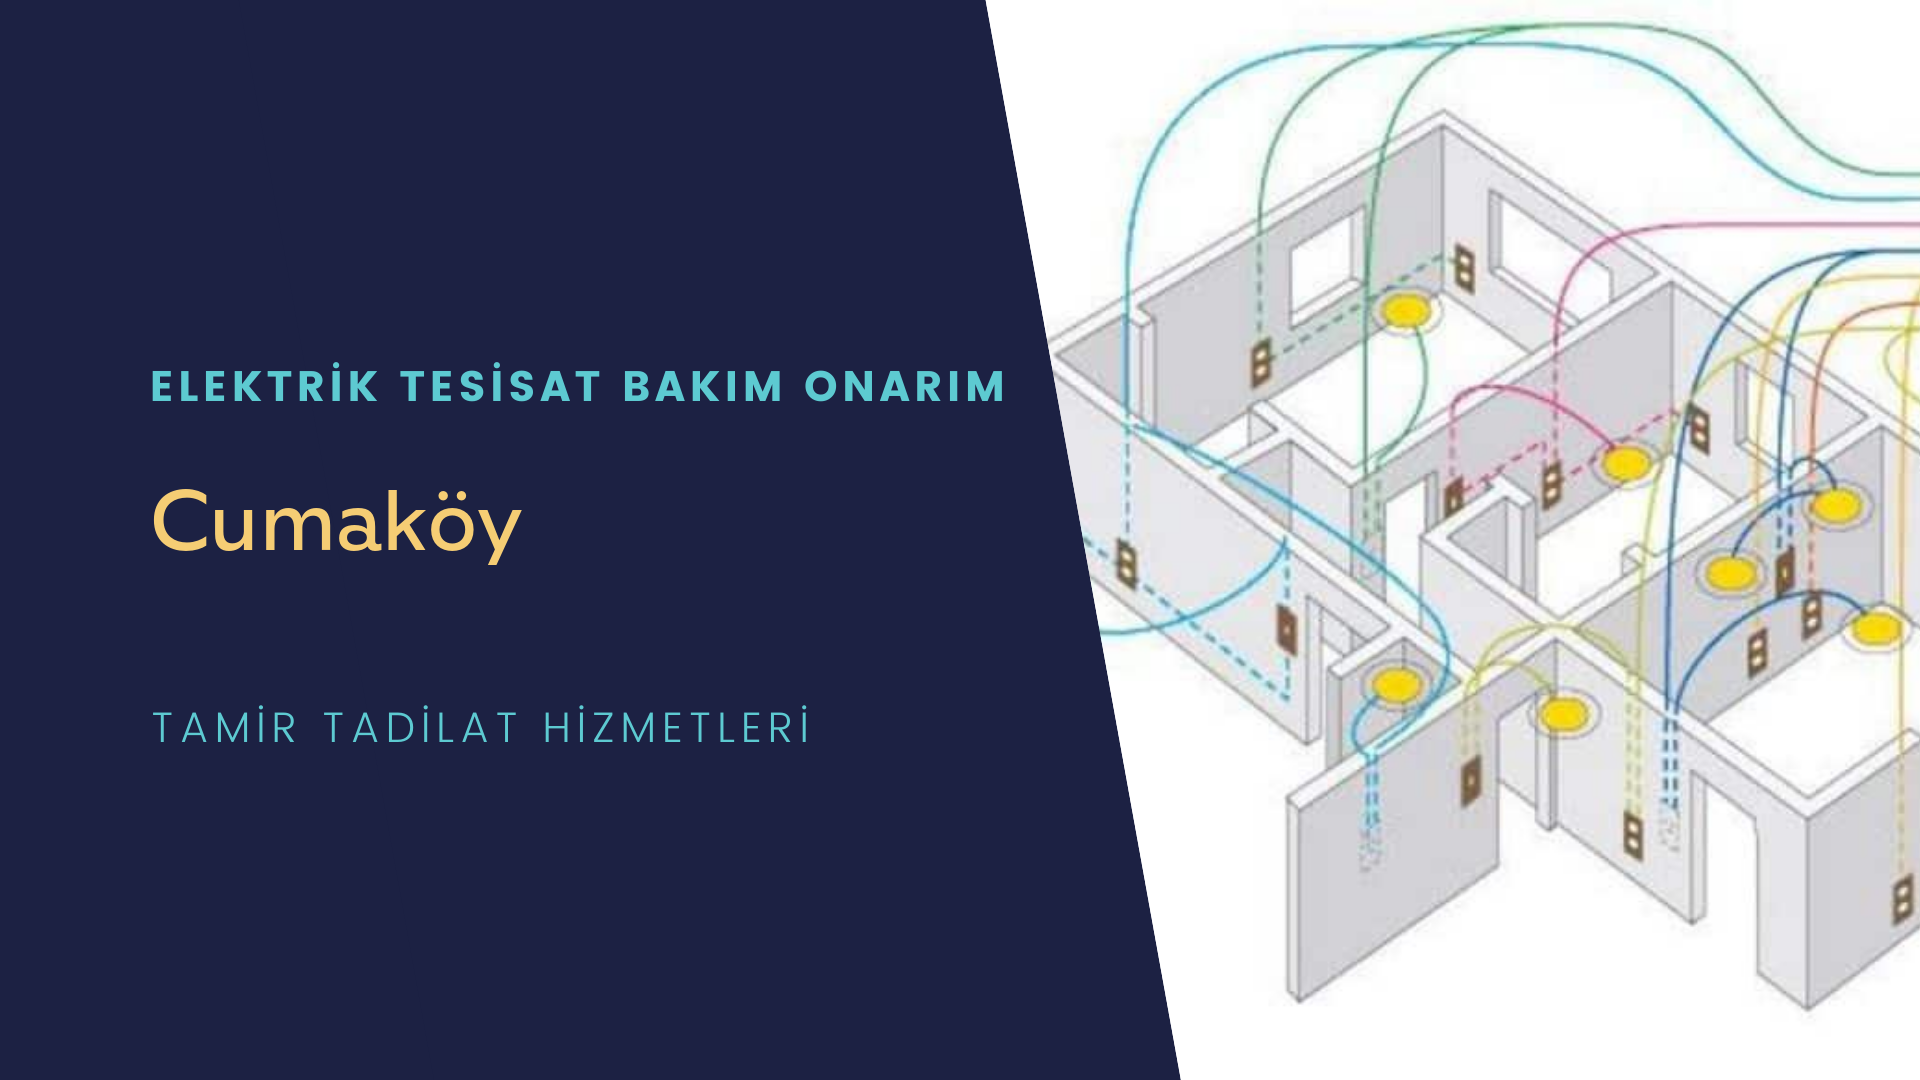 Cumaköy'de elektrik tesisatı ustalarımı arıyorsunuz doğru adrestenizi Cumaköy elektrik tesisatı ustalarımız 7/24 sizlere hizmet vermekten mutluluk duyar.